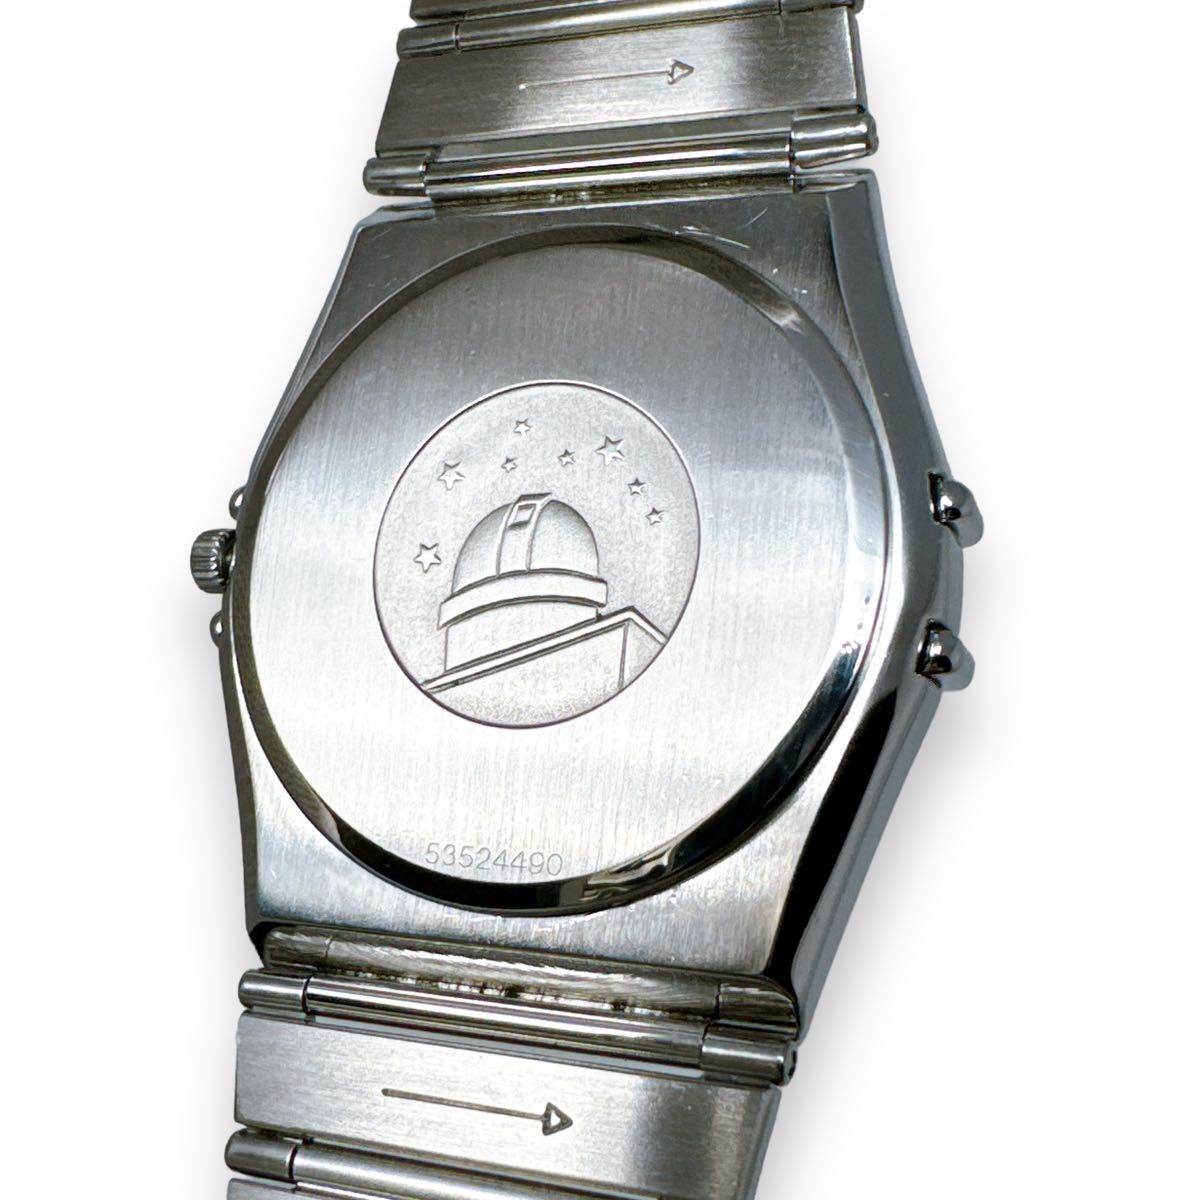 オメガ コンステレーション シルバー クォーツ デイト メンズ 時計 ブランド OMEGA QZ シルバー文字盤 ブランド 稼働